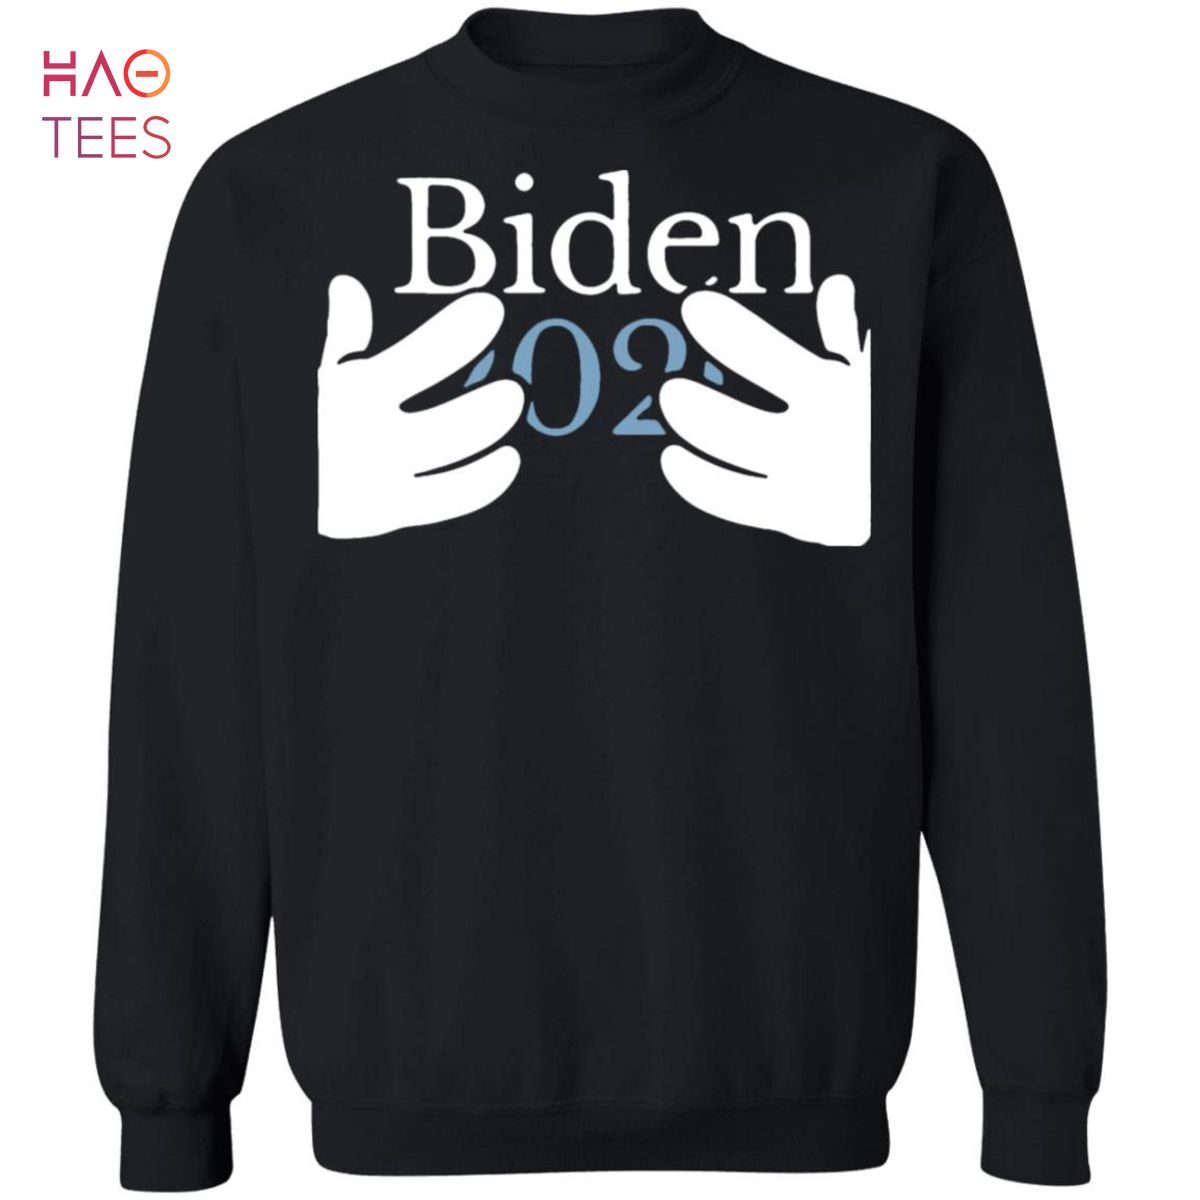 BEST Biden 2020 Sweater